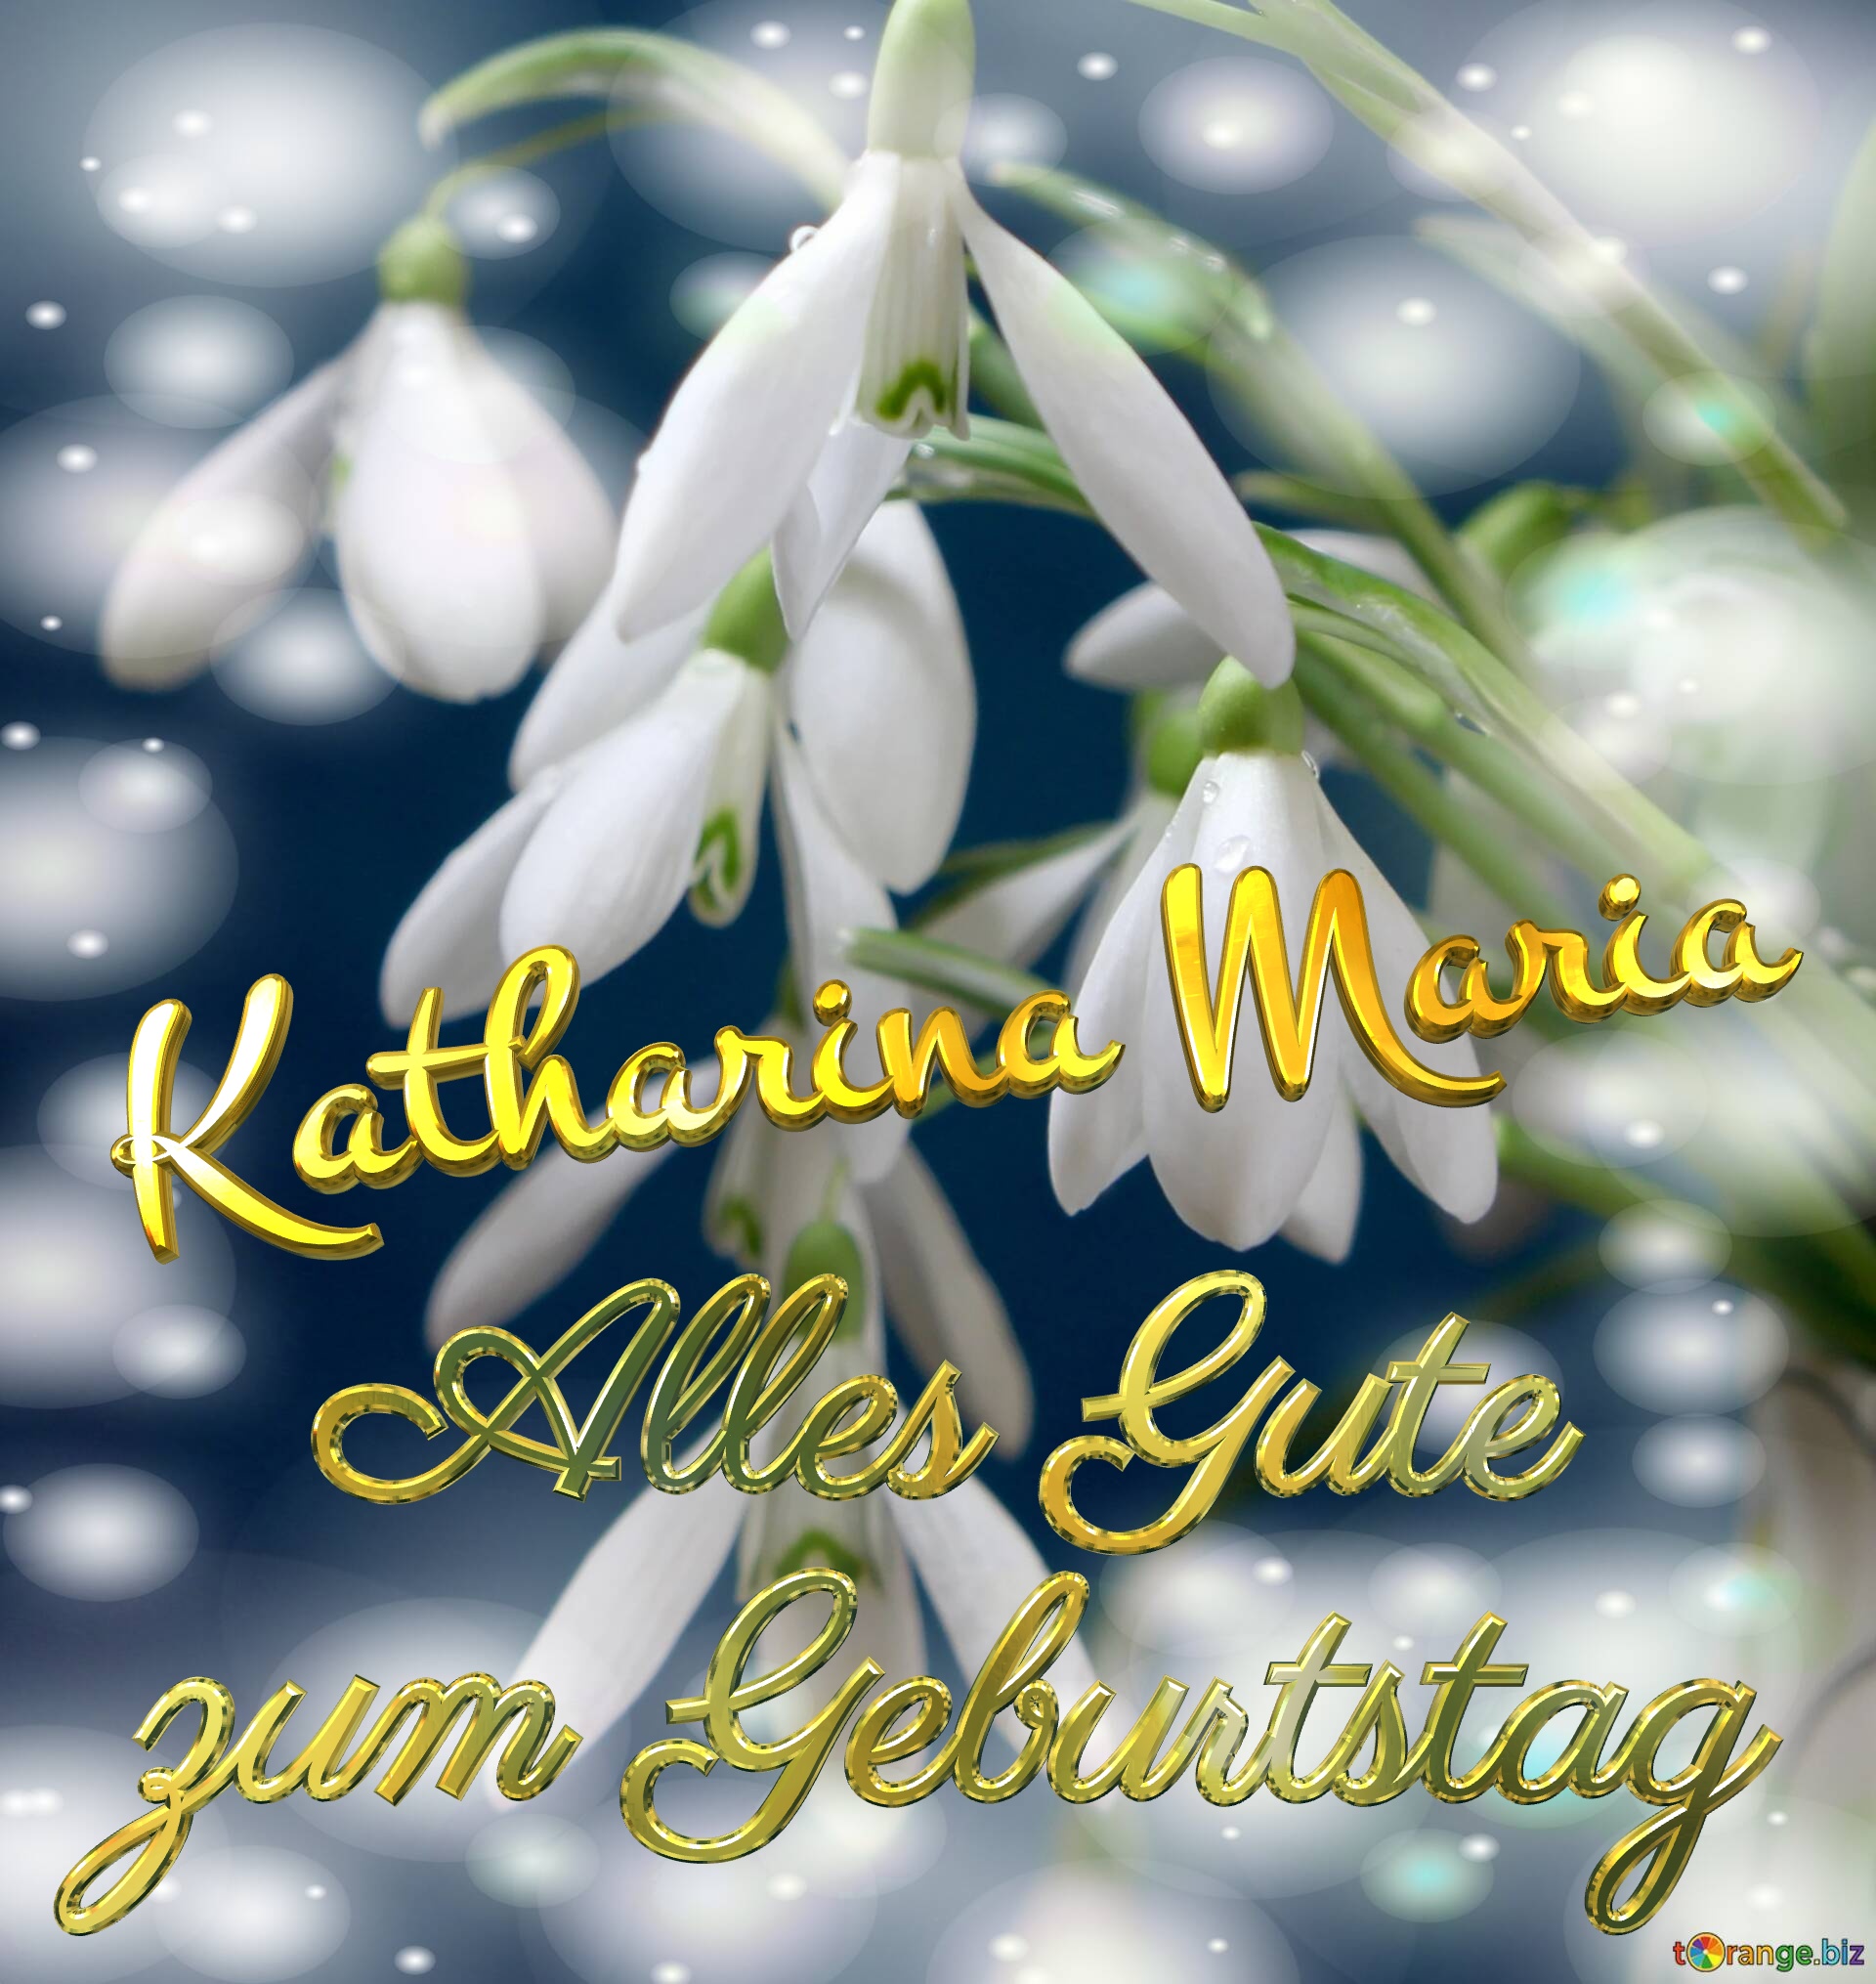 Katharina Maria Alles Gute  zum Geburtstag Blumenstrauß von Frühlingsblumen №0